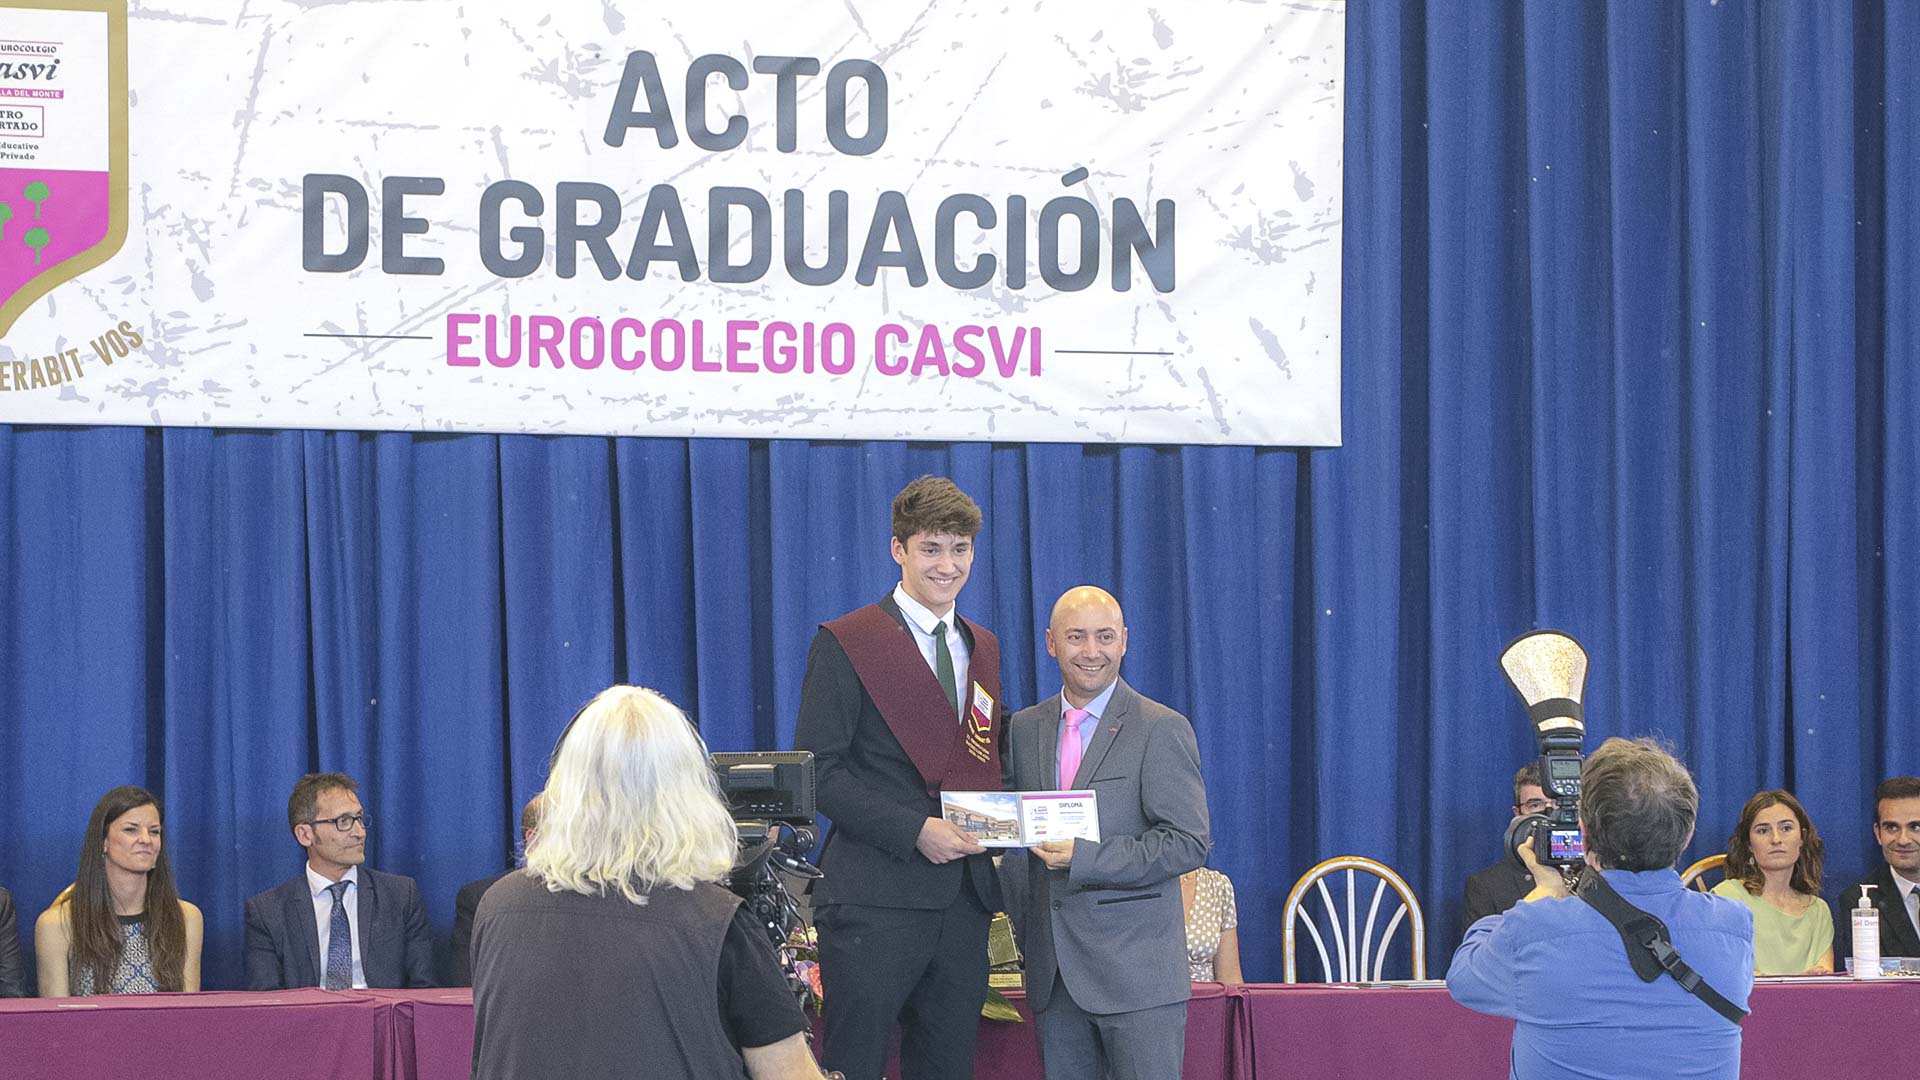 Pablo Jimenez, profesor de Casvi Boadilla, entrega el diploma de Bachillerato a un alumno durante la graduación de la XI Promoción de Bachillerato de Casvi Boadilla.